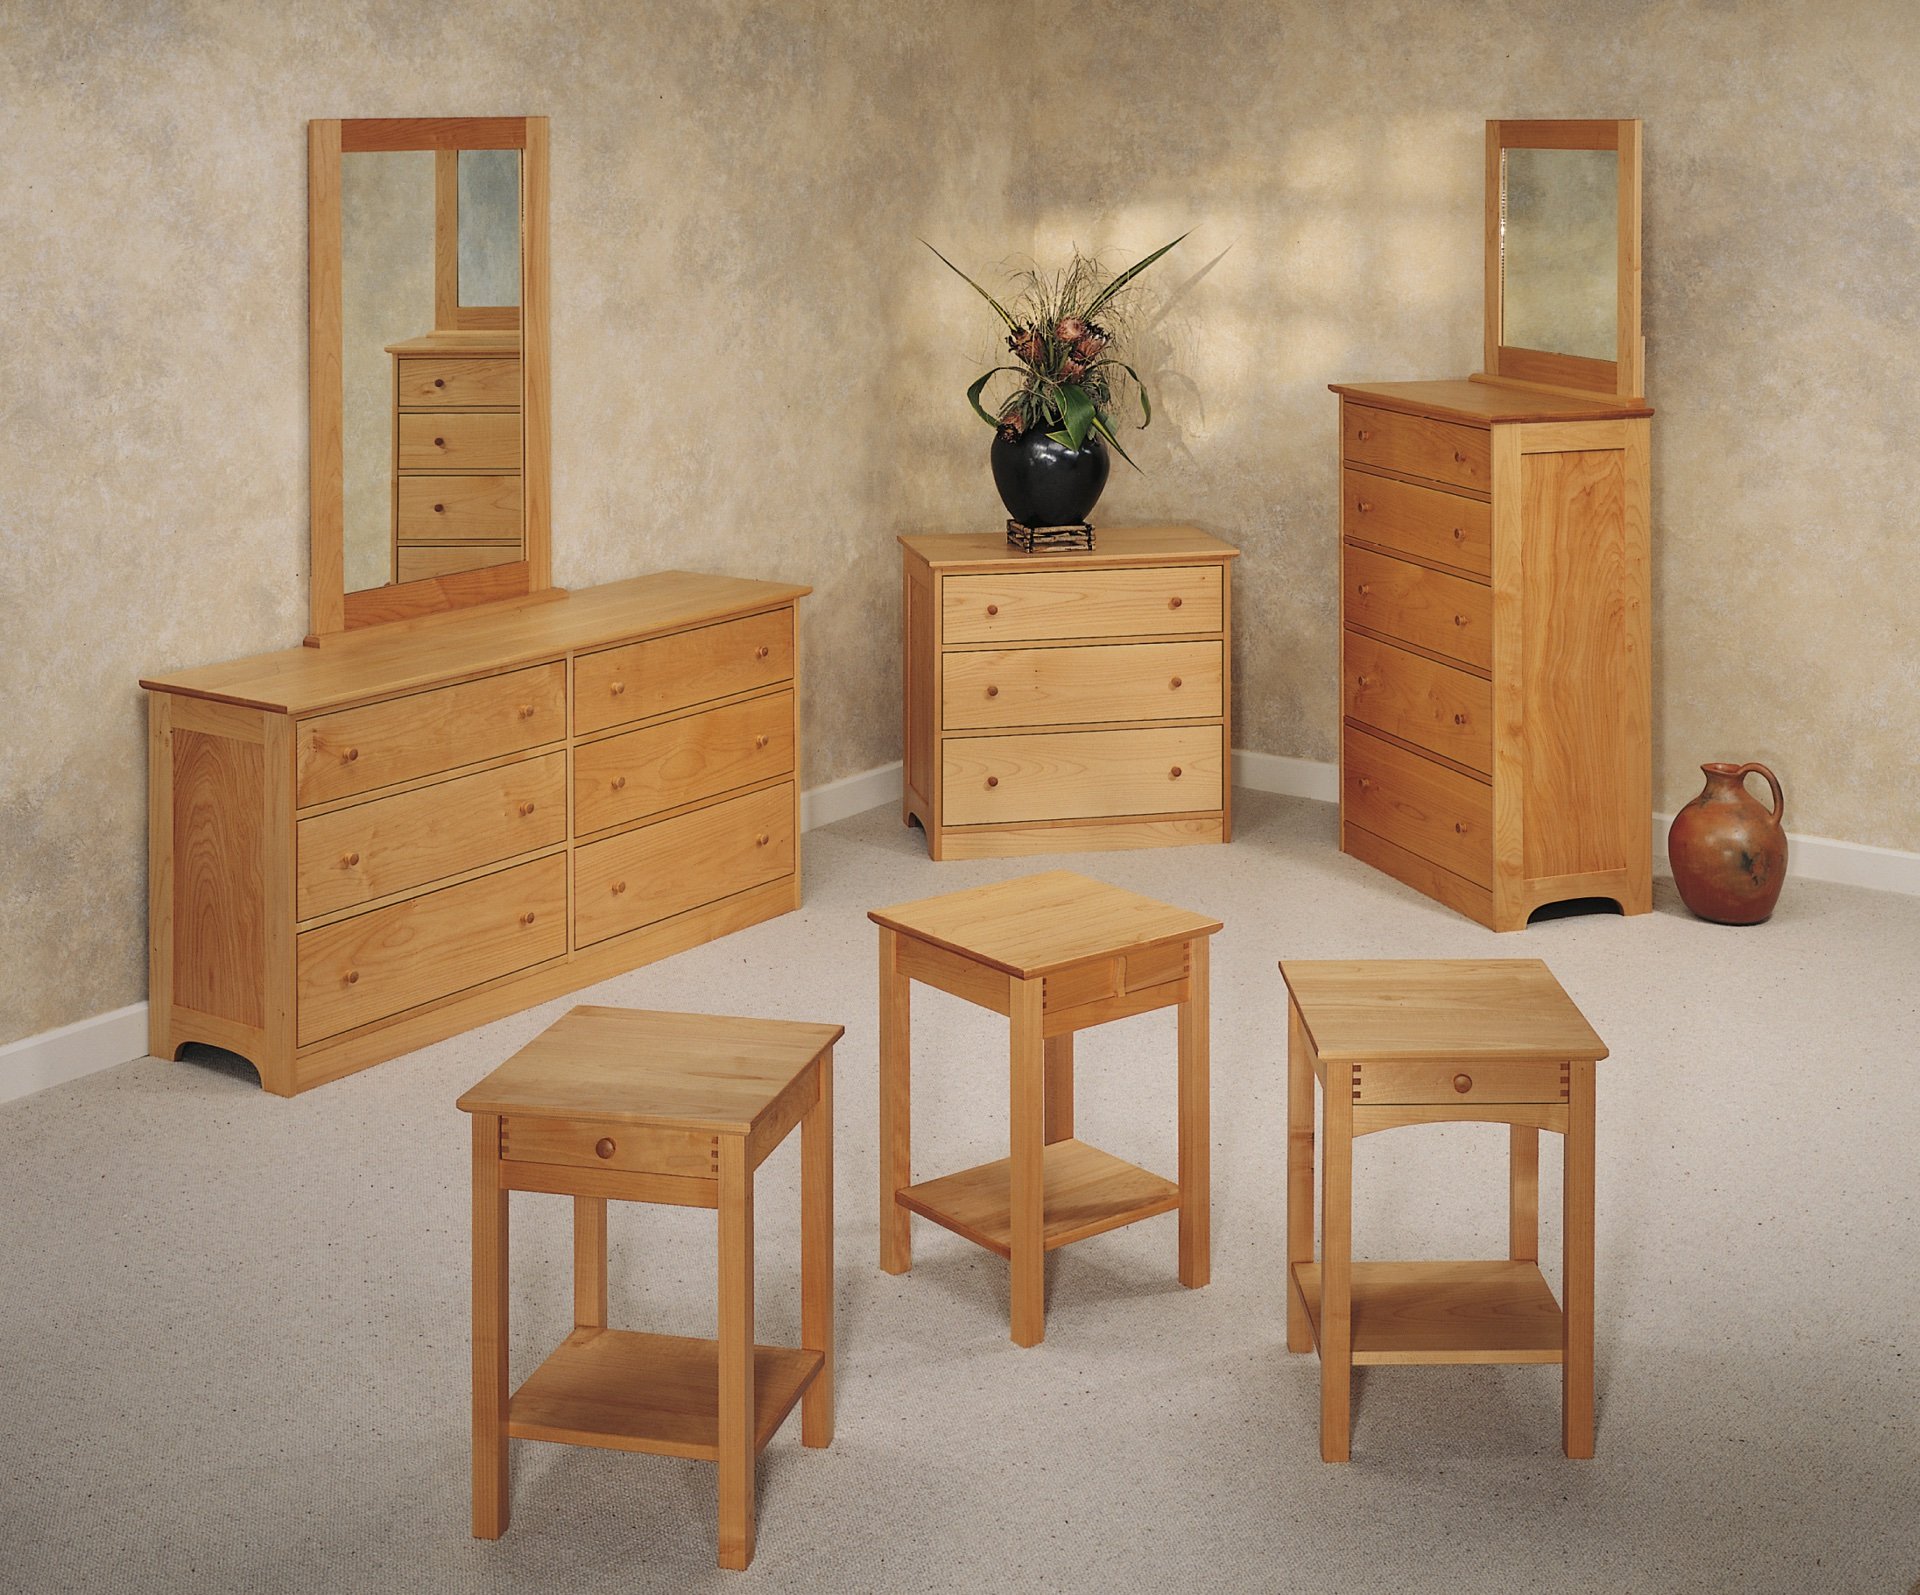 Wooden мебель. Деревянная мебель. Красивая деревянная мебель. Деревянные предметы интерьера. Дерево для мебели.